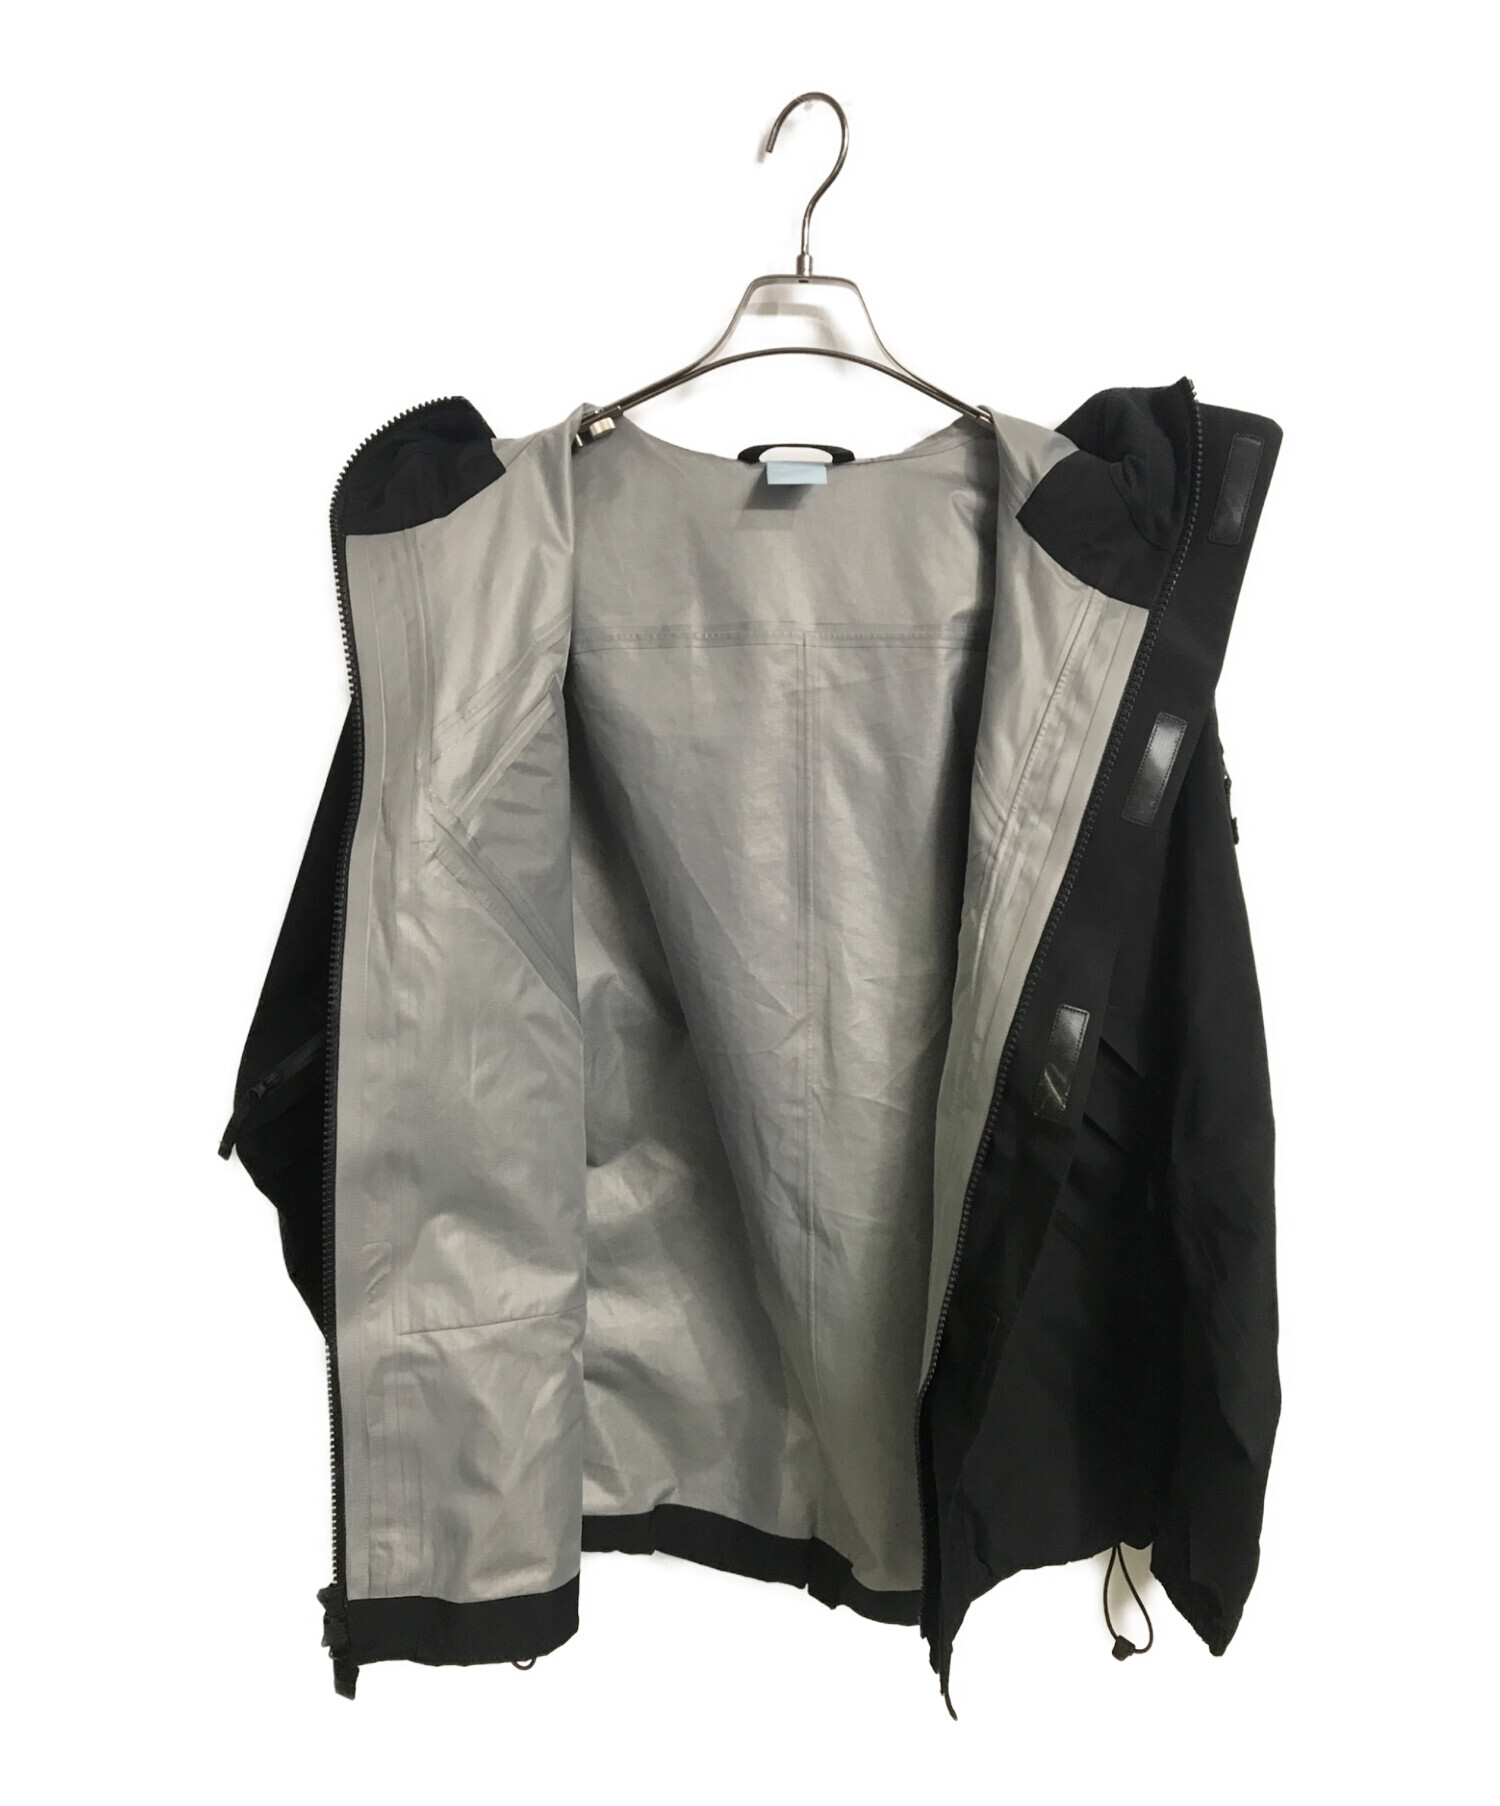 NIKE (ナイキ) NOCTA (ノクタ) テックジャケット ブラック サイズ:M